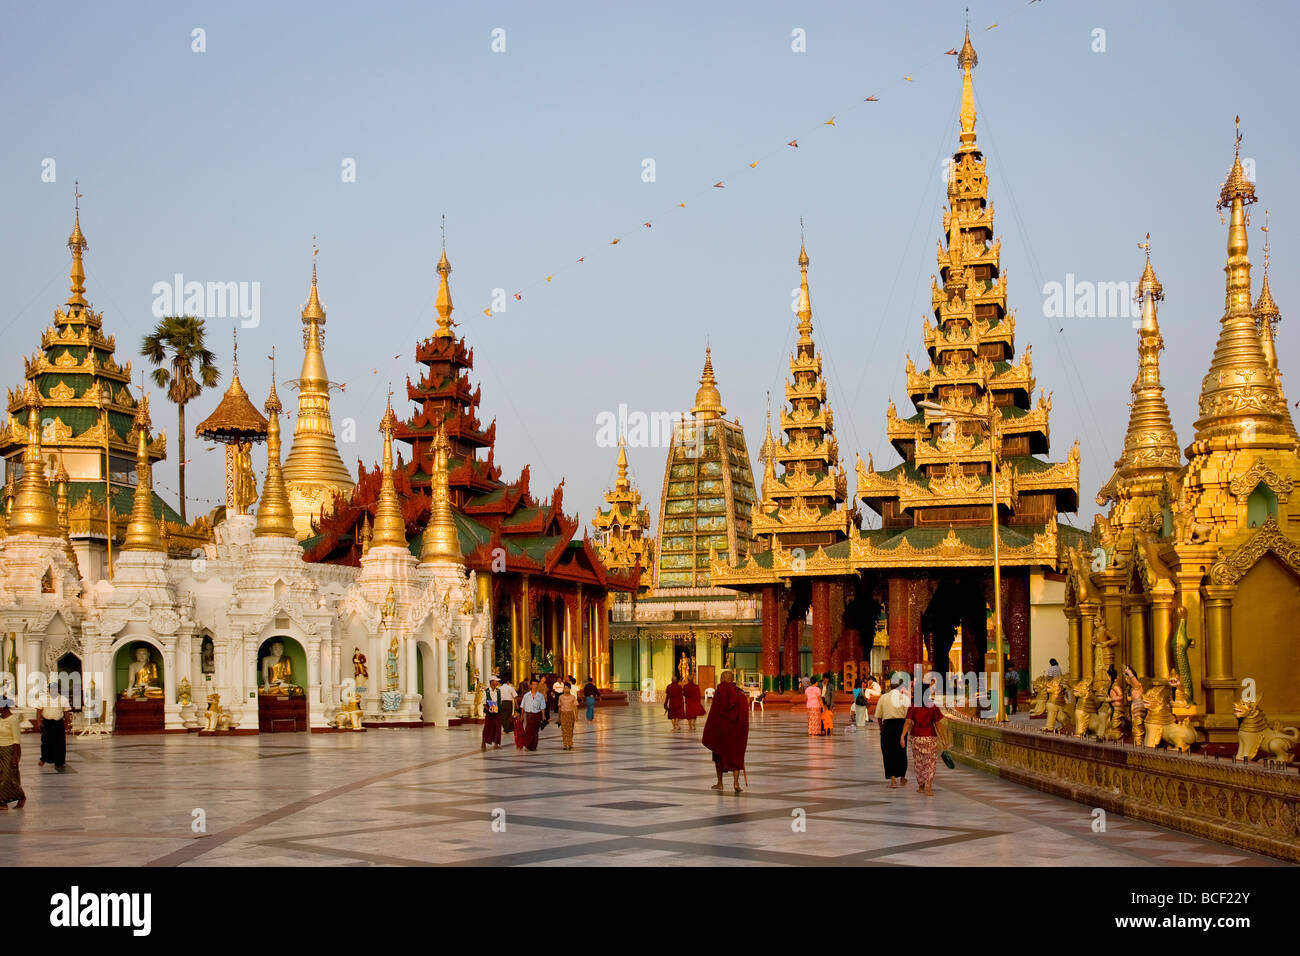 Le Myanmar, Birmanie, Yangon. Les petits stupas, temples, sanctuaires, salles de prières et des pavillons de la pagode Shwedagon Golden Temple Banque D'Images